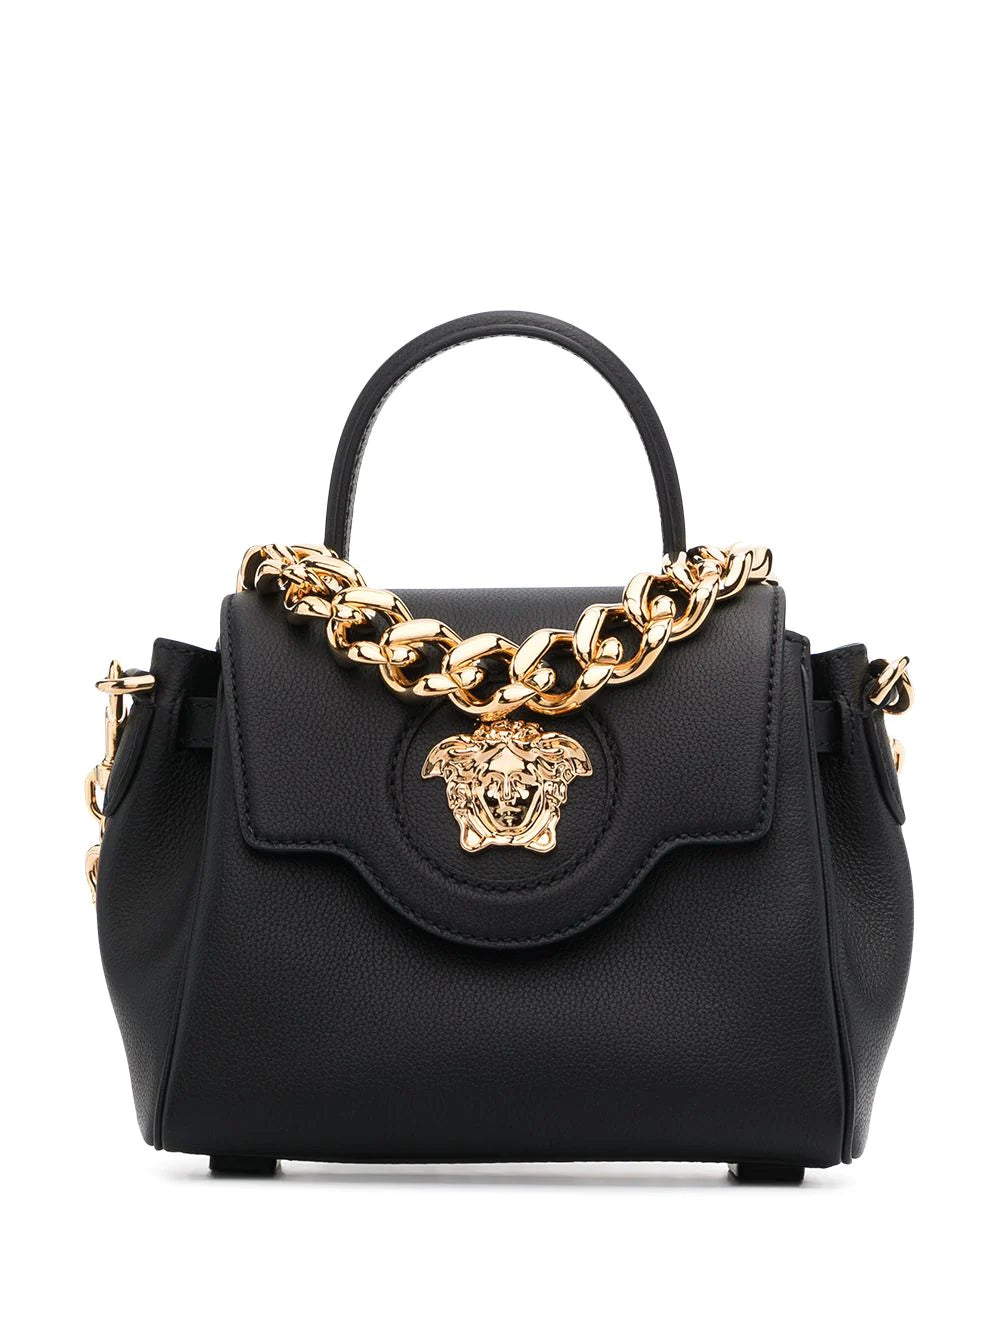 Versace | La Medusa Small Leather Handbag | Black Tu